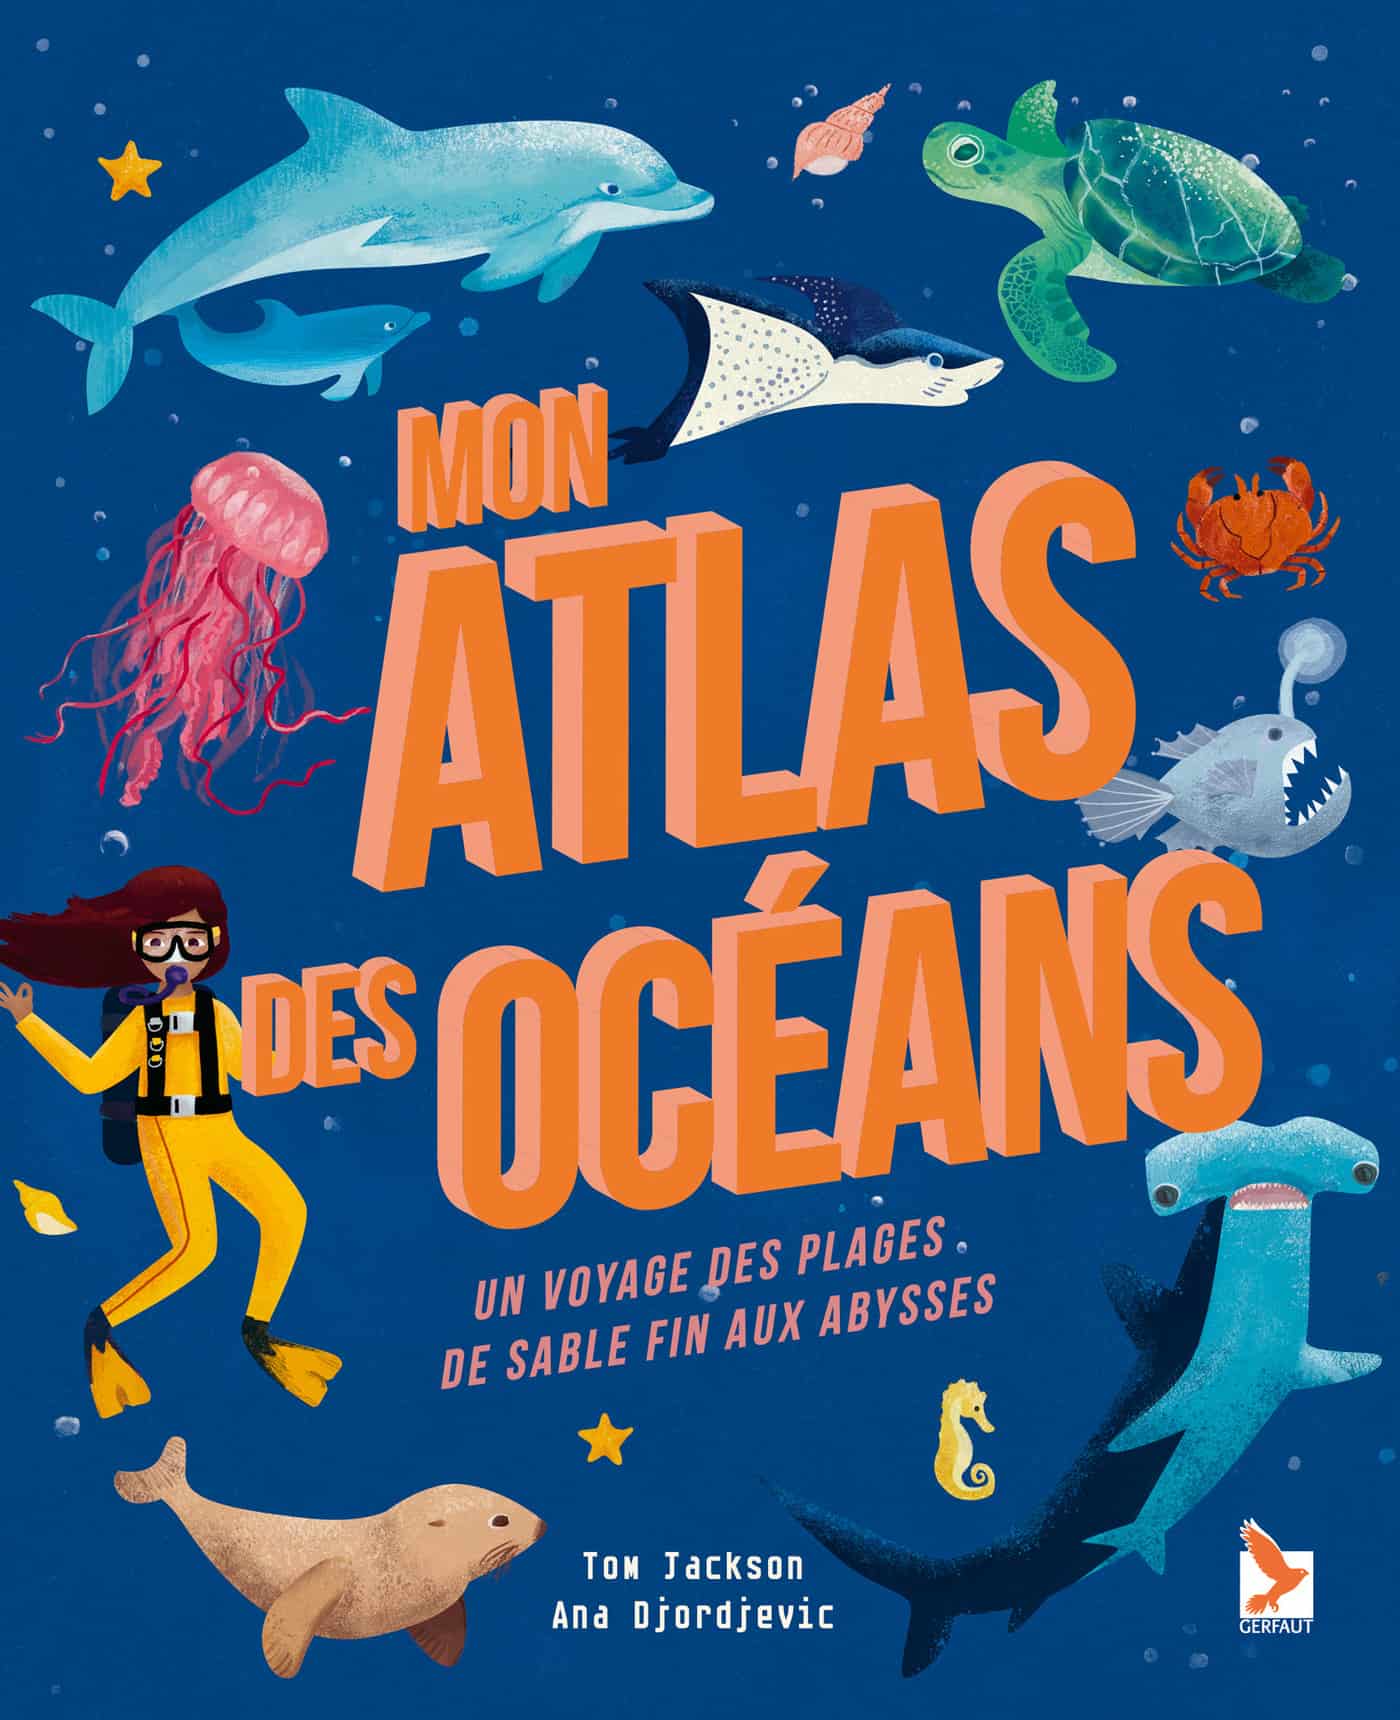 mon atlas des oceans editions du gerfaut